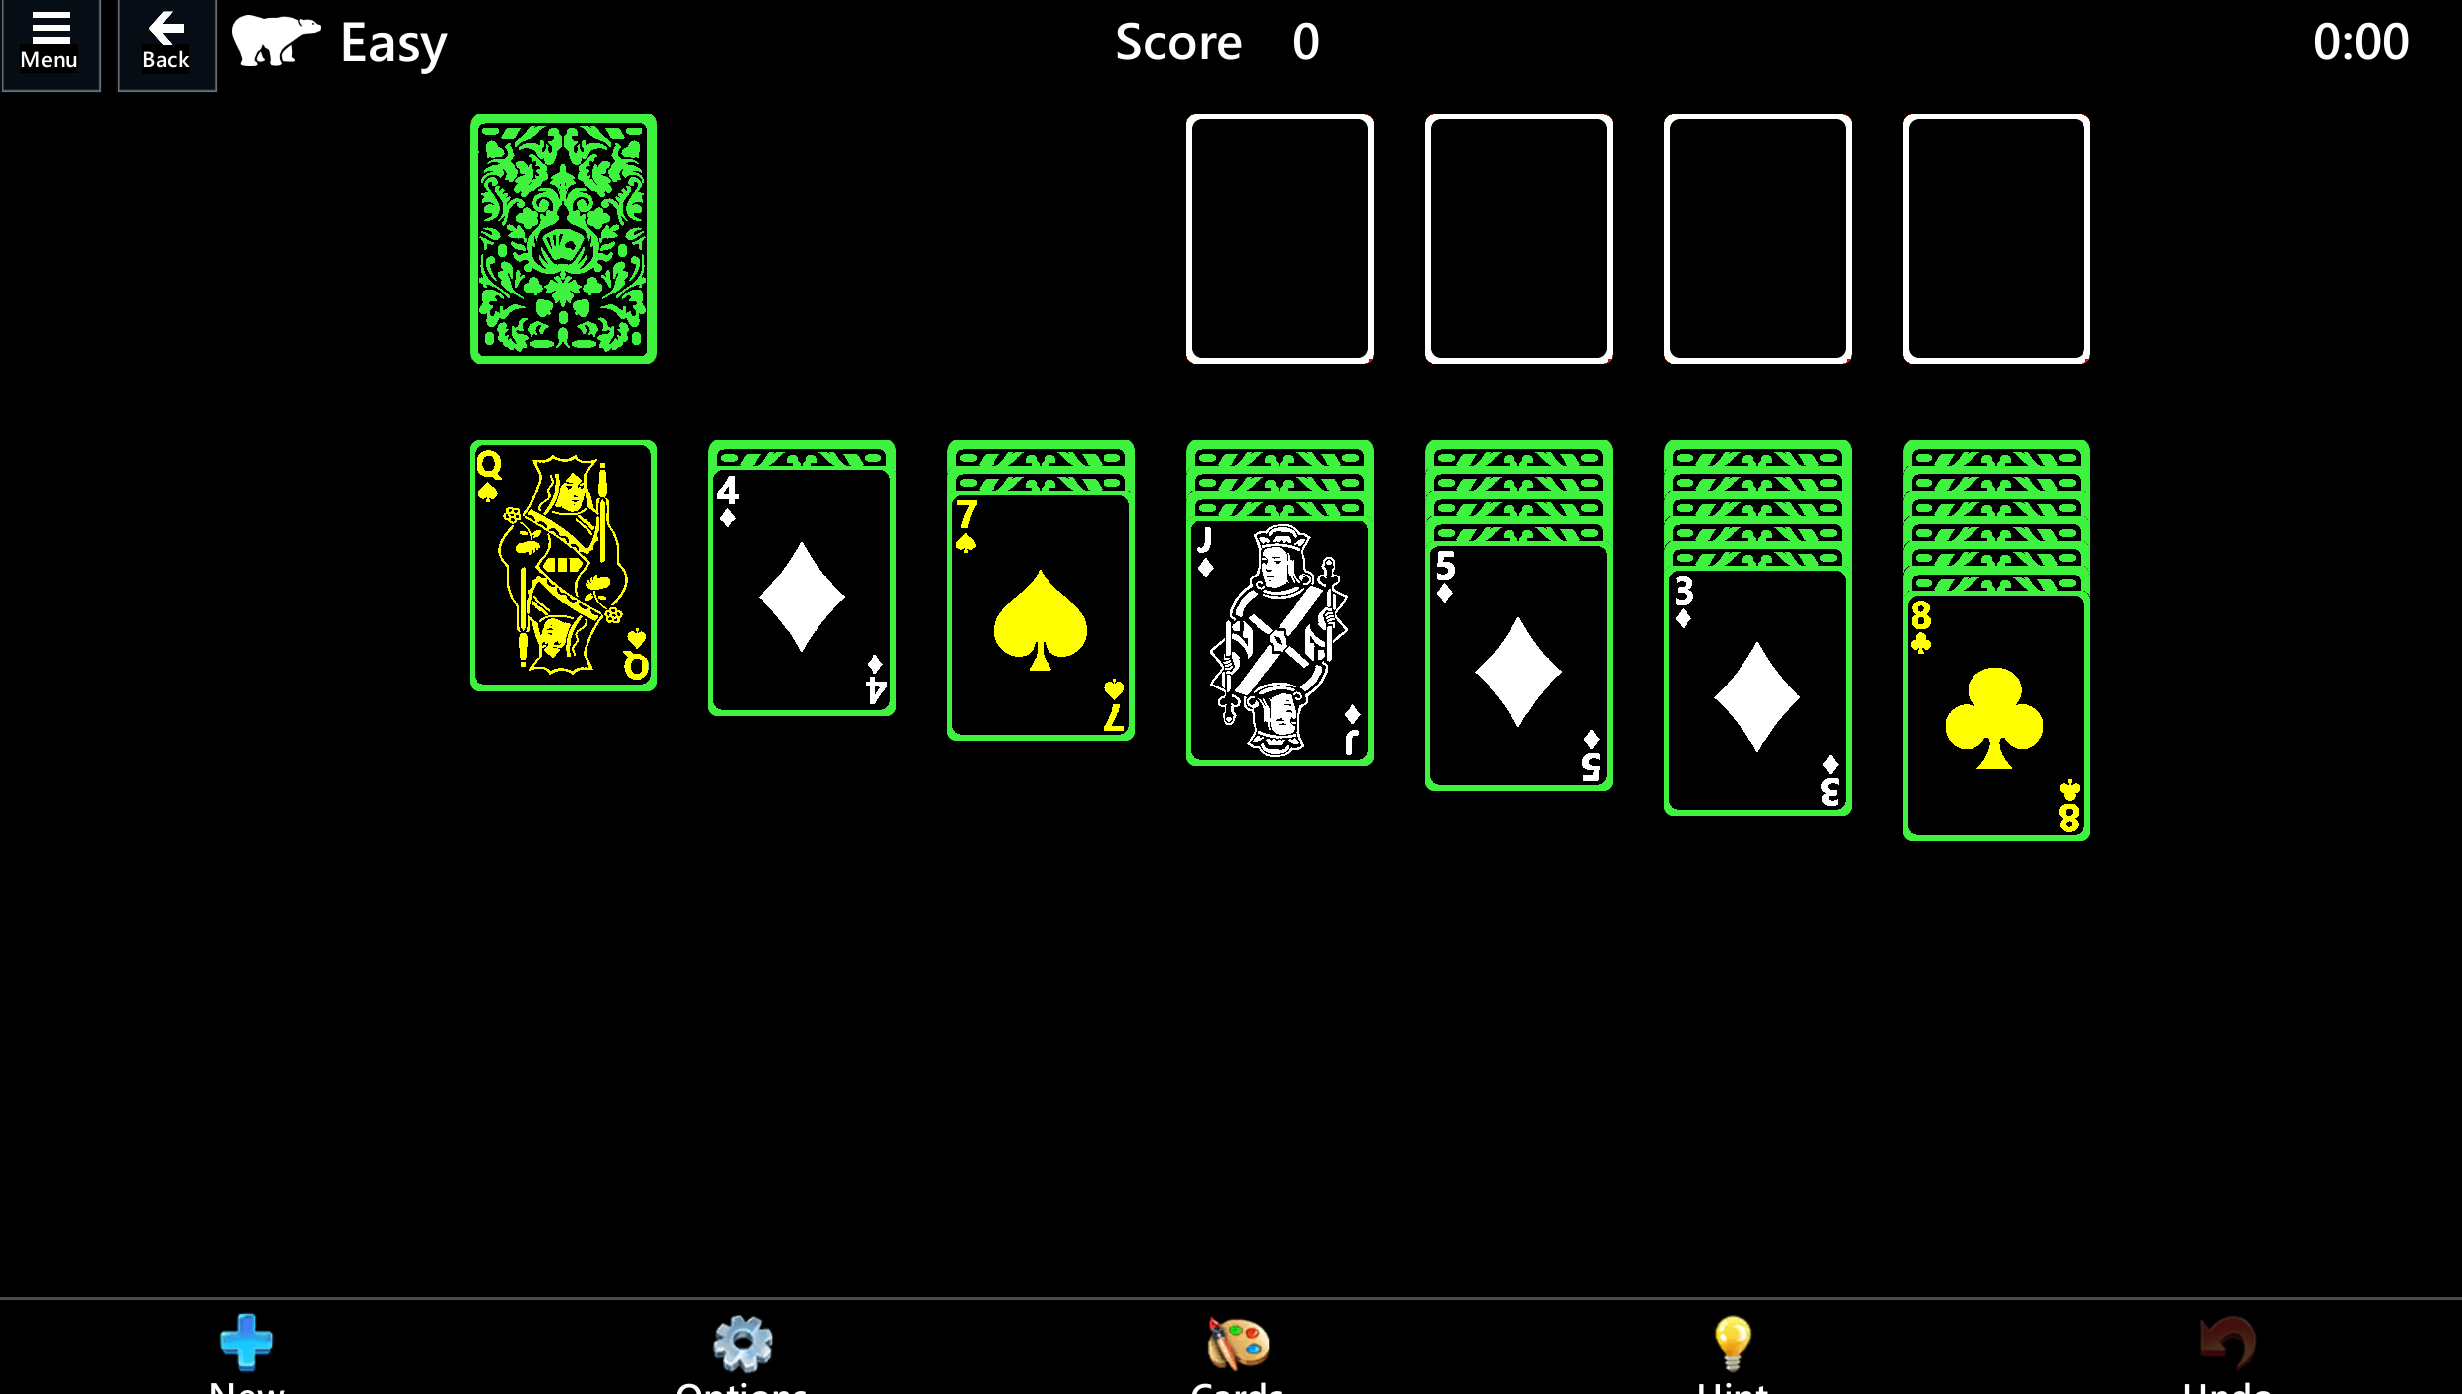 ハイコントラストのソリティア ゲーム モード。 黒いカードは明るい緑色で縁取られ、黒いテーブルにどのカードが配置されているかを示す白いシンボルが描かれています。 カードの裏面には、緑豊かな複雑な模様が描かれています。